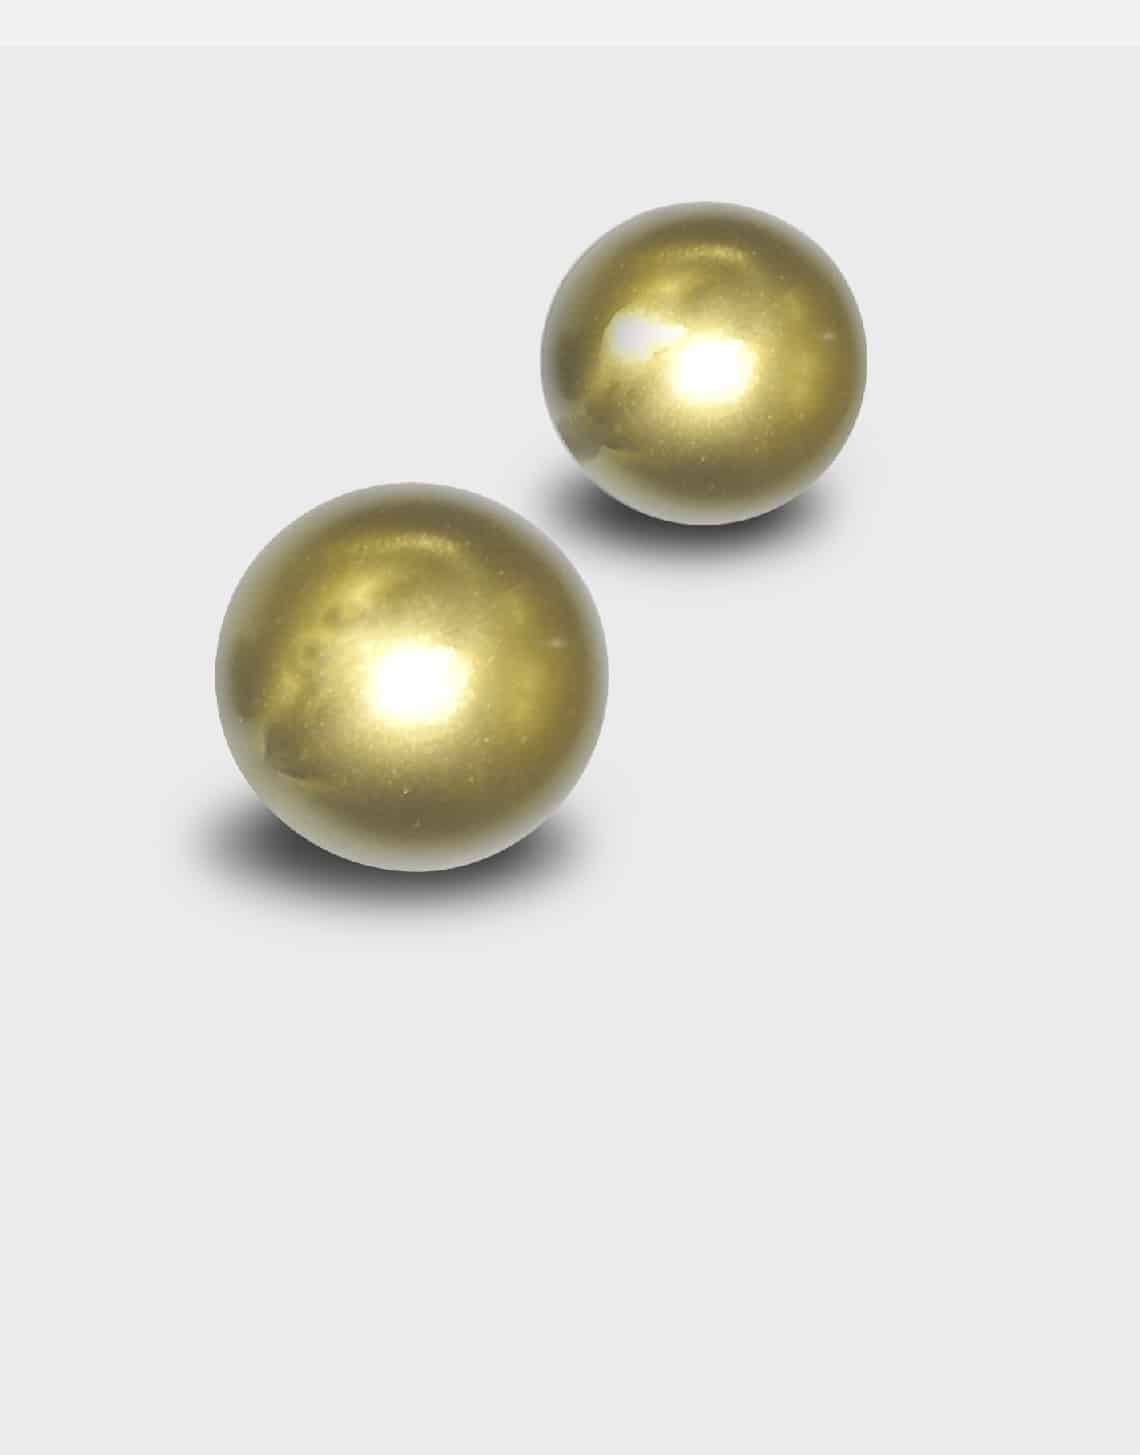 ladder rest balls - gold balls